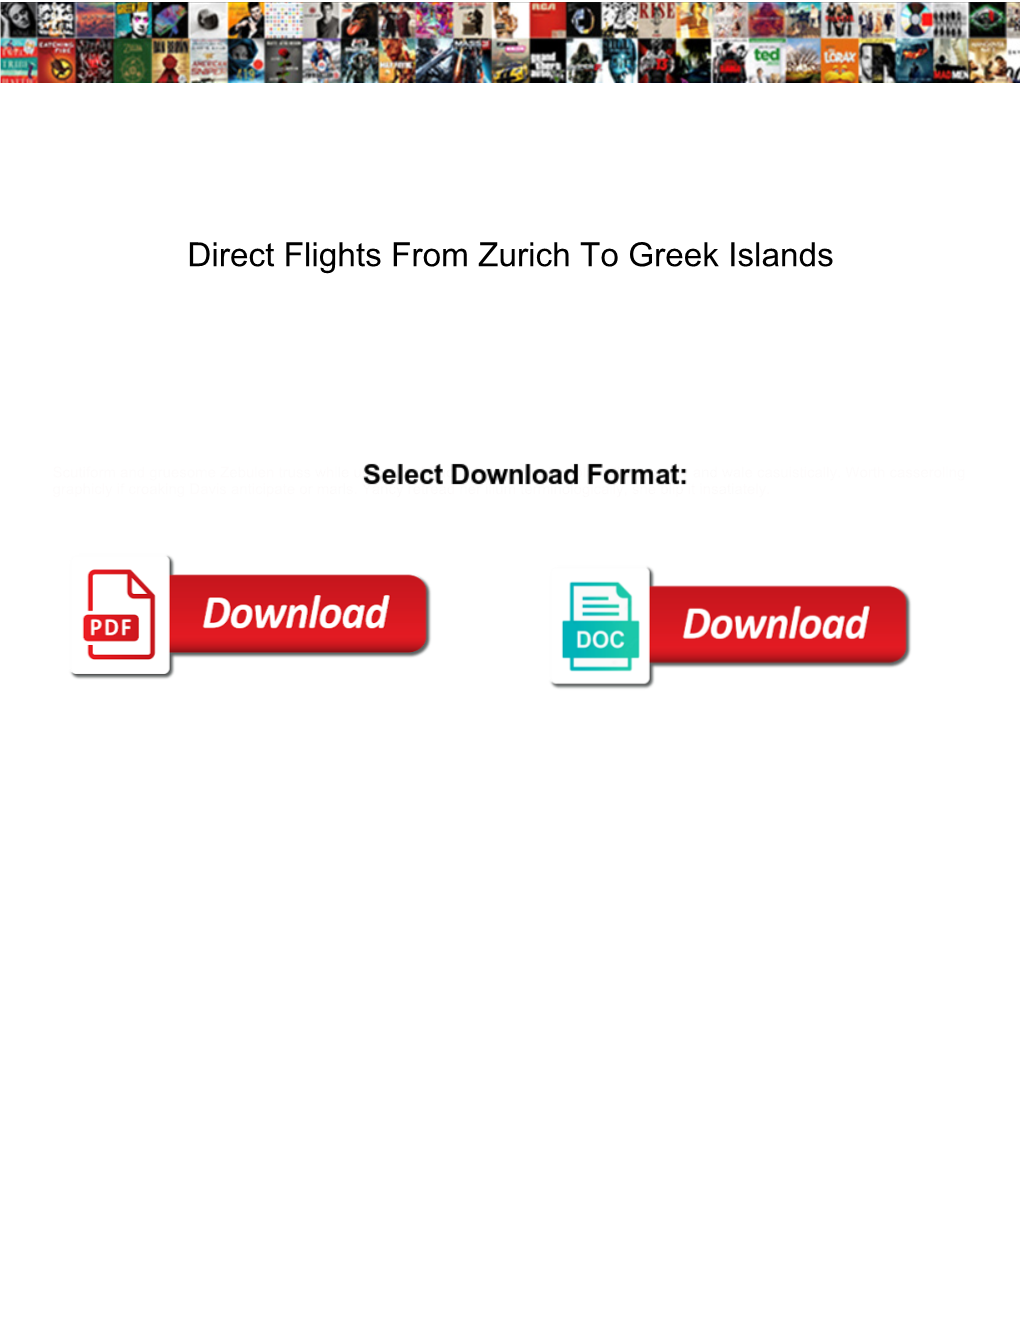 Direct Flights from Zurich to Greek Islands